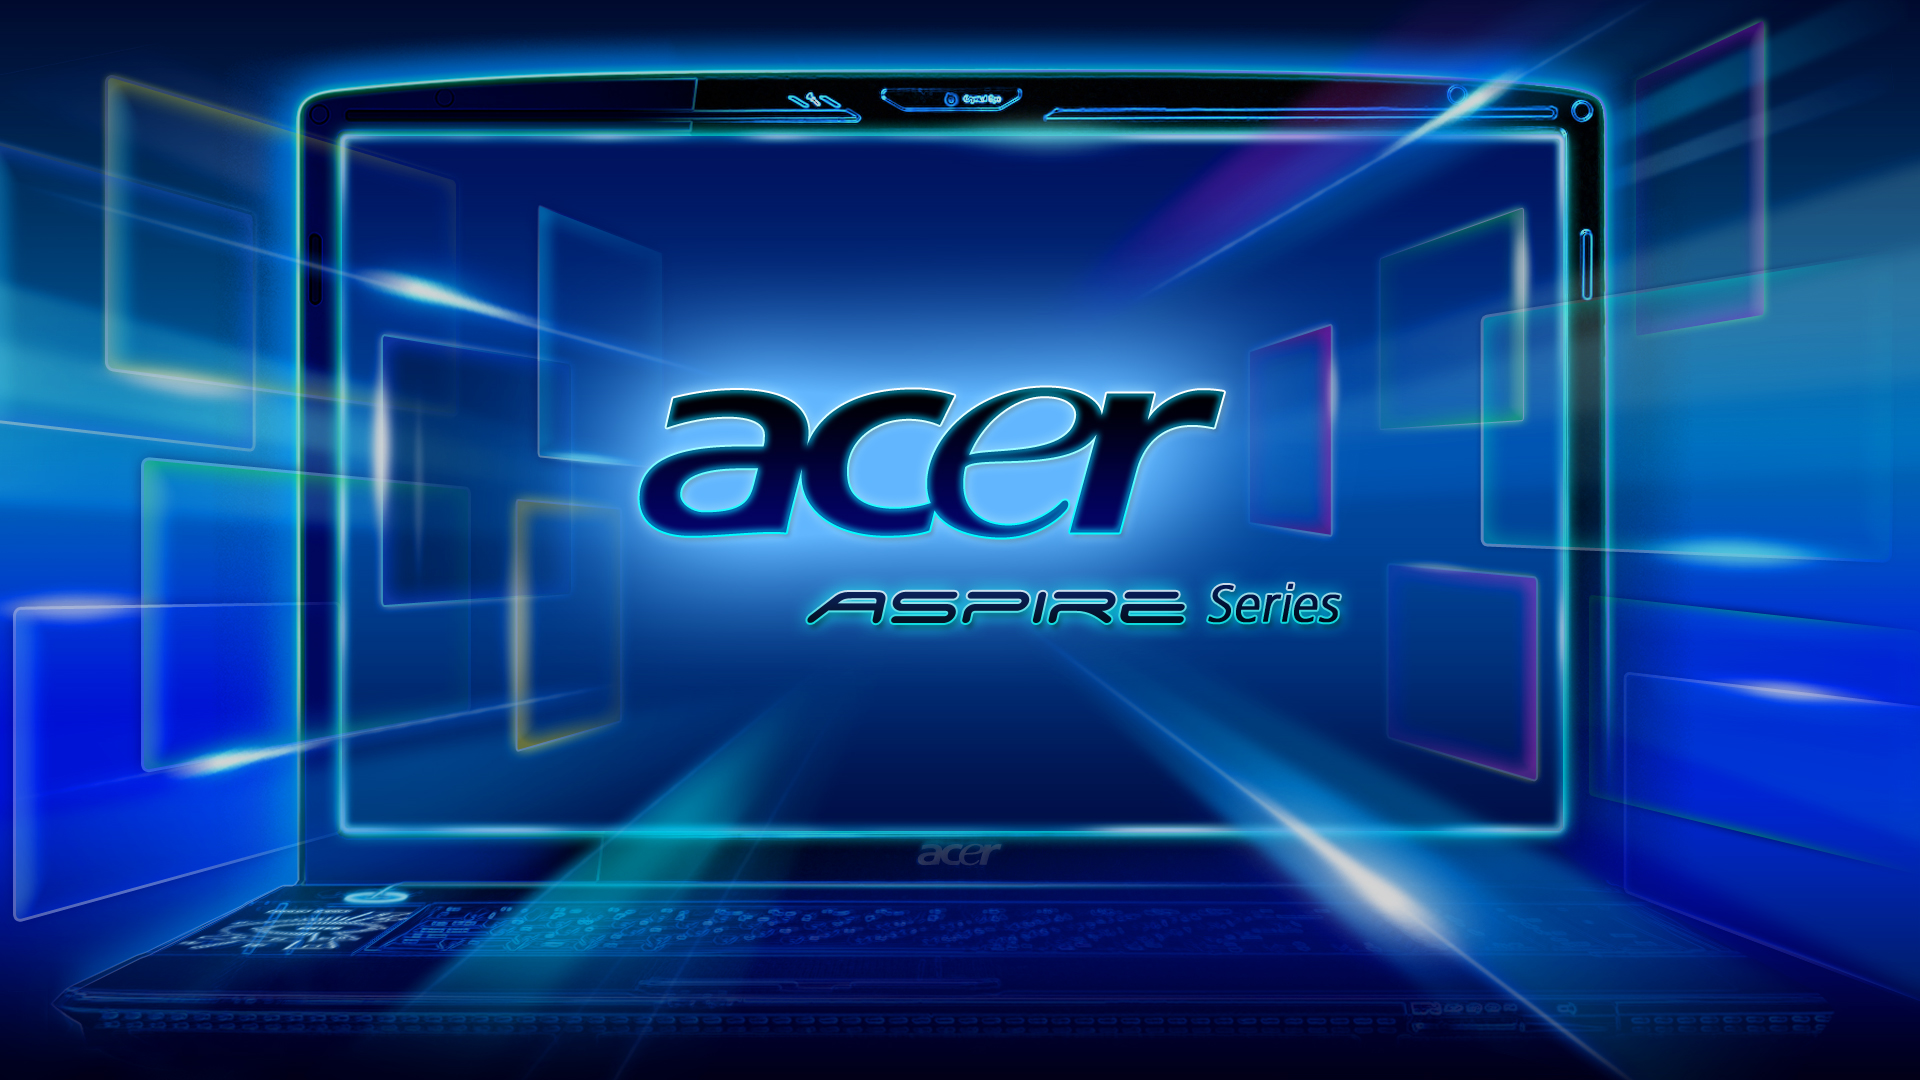 Hình nền Acer Nitro 5 sẽ khiến bạn trở nên đặc biệt hơn với màn hình tiên tiến và độ phân giải hoàn hảo. Với màu sắc tinh tế và thiết kế độc đáo, hình nền này hoàn toàn khác biệt so với các hình nền thông thường khác. Bạn sẽ thích thú với Acer Nitro